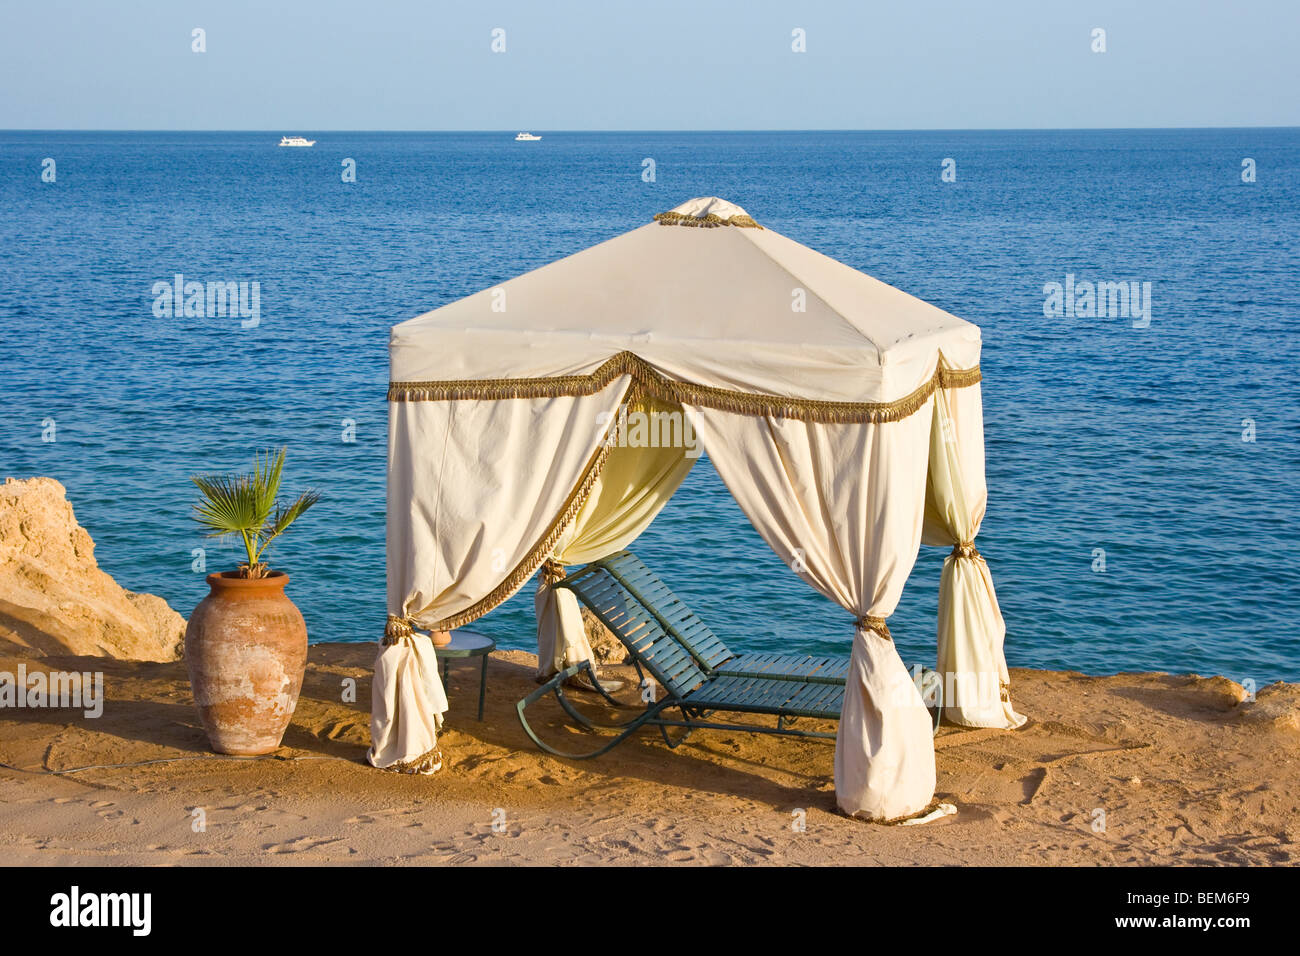 Tenda da spiaggia immagini e fotografie stock ad alta risoluzione - Alamy